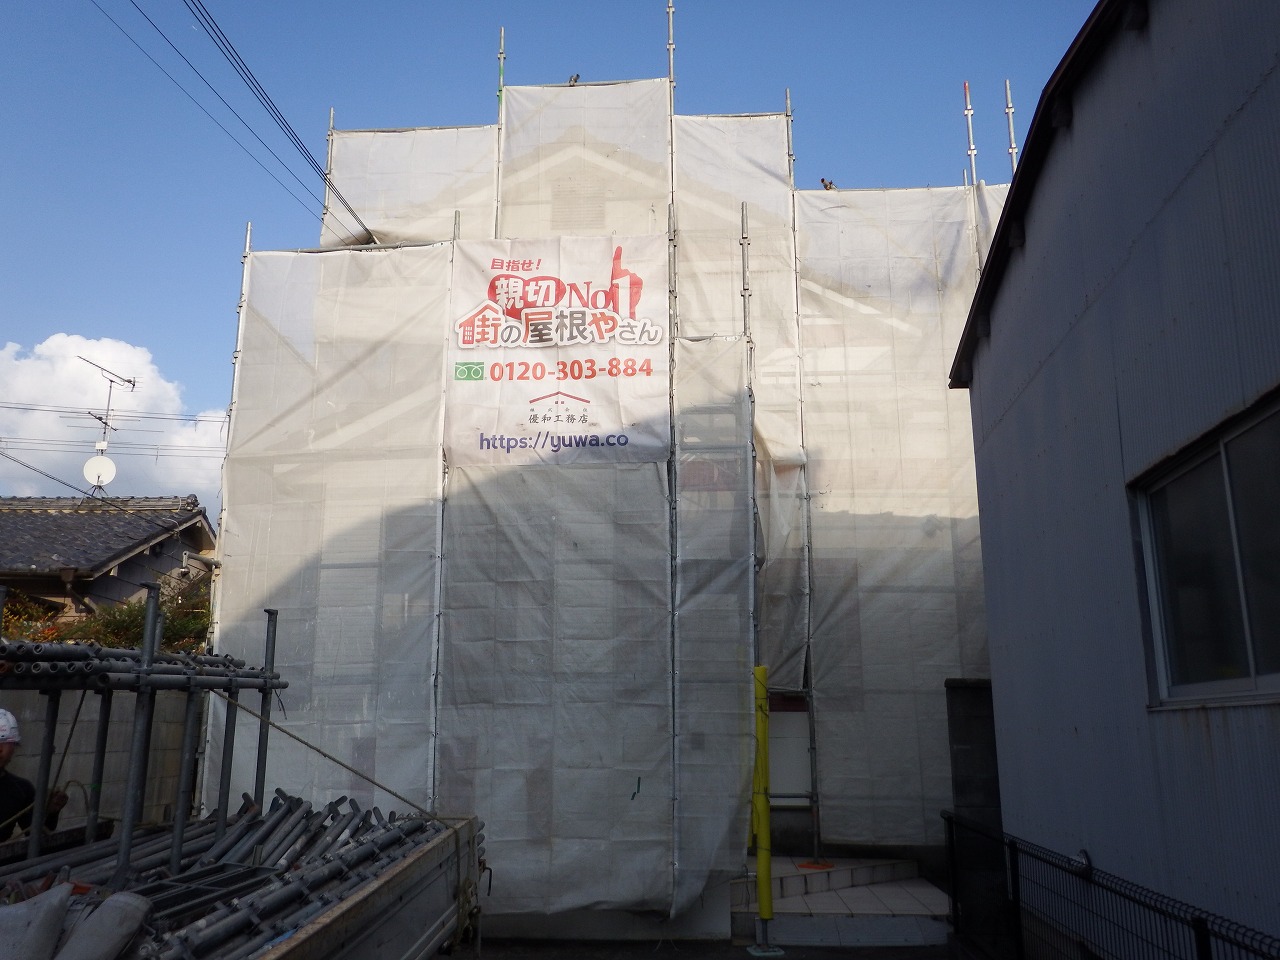 奈良市のリフォーム工事の足場設置、広告シート設置